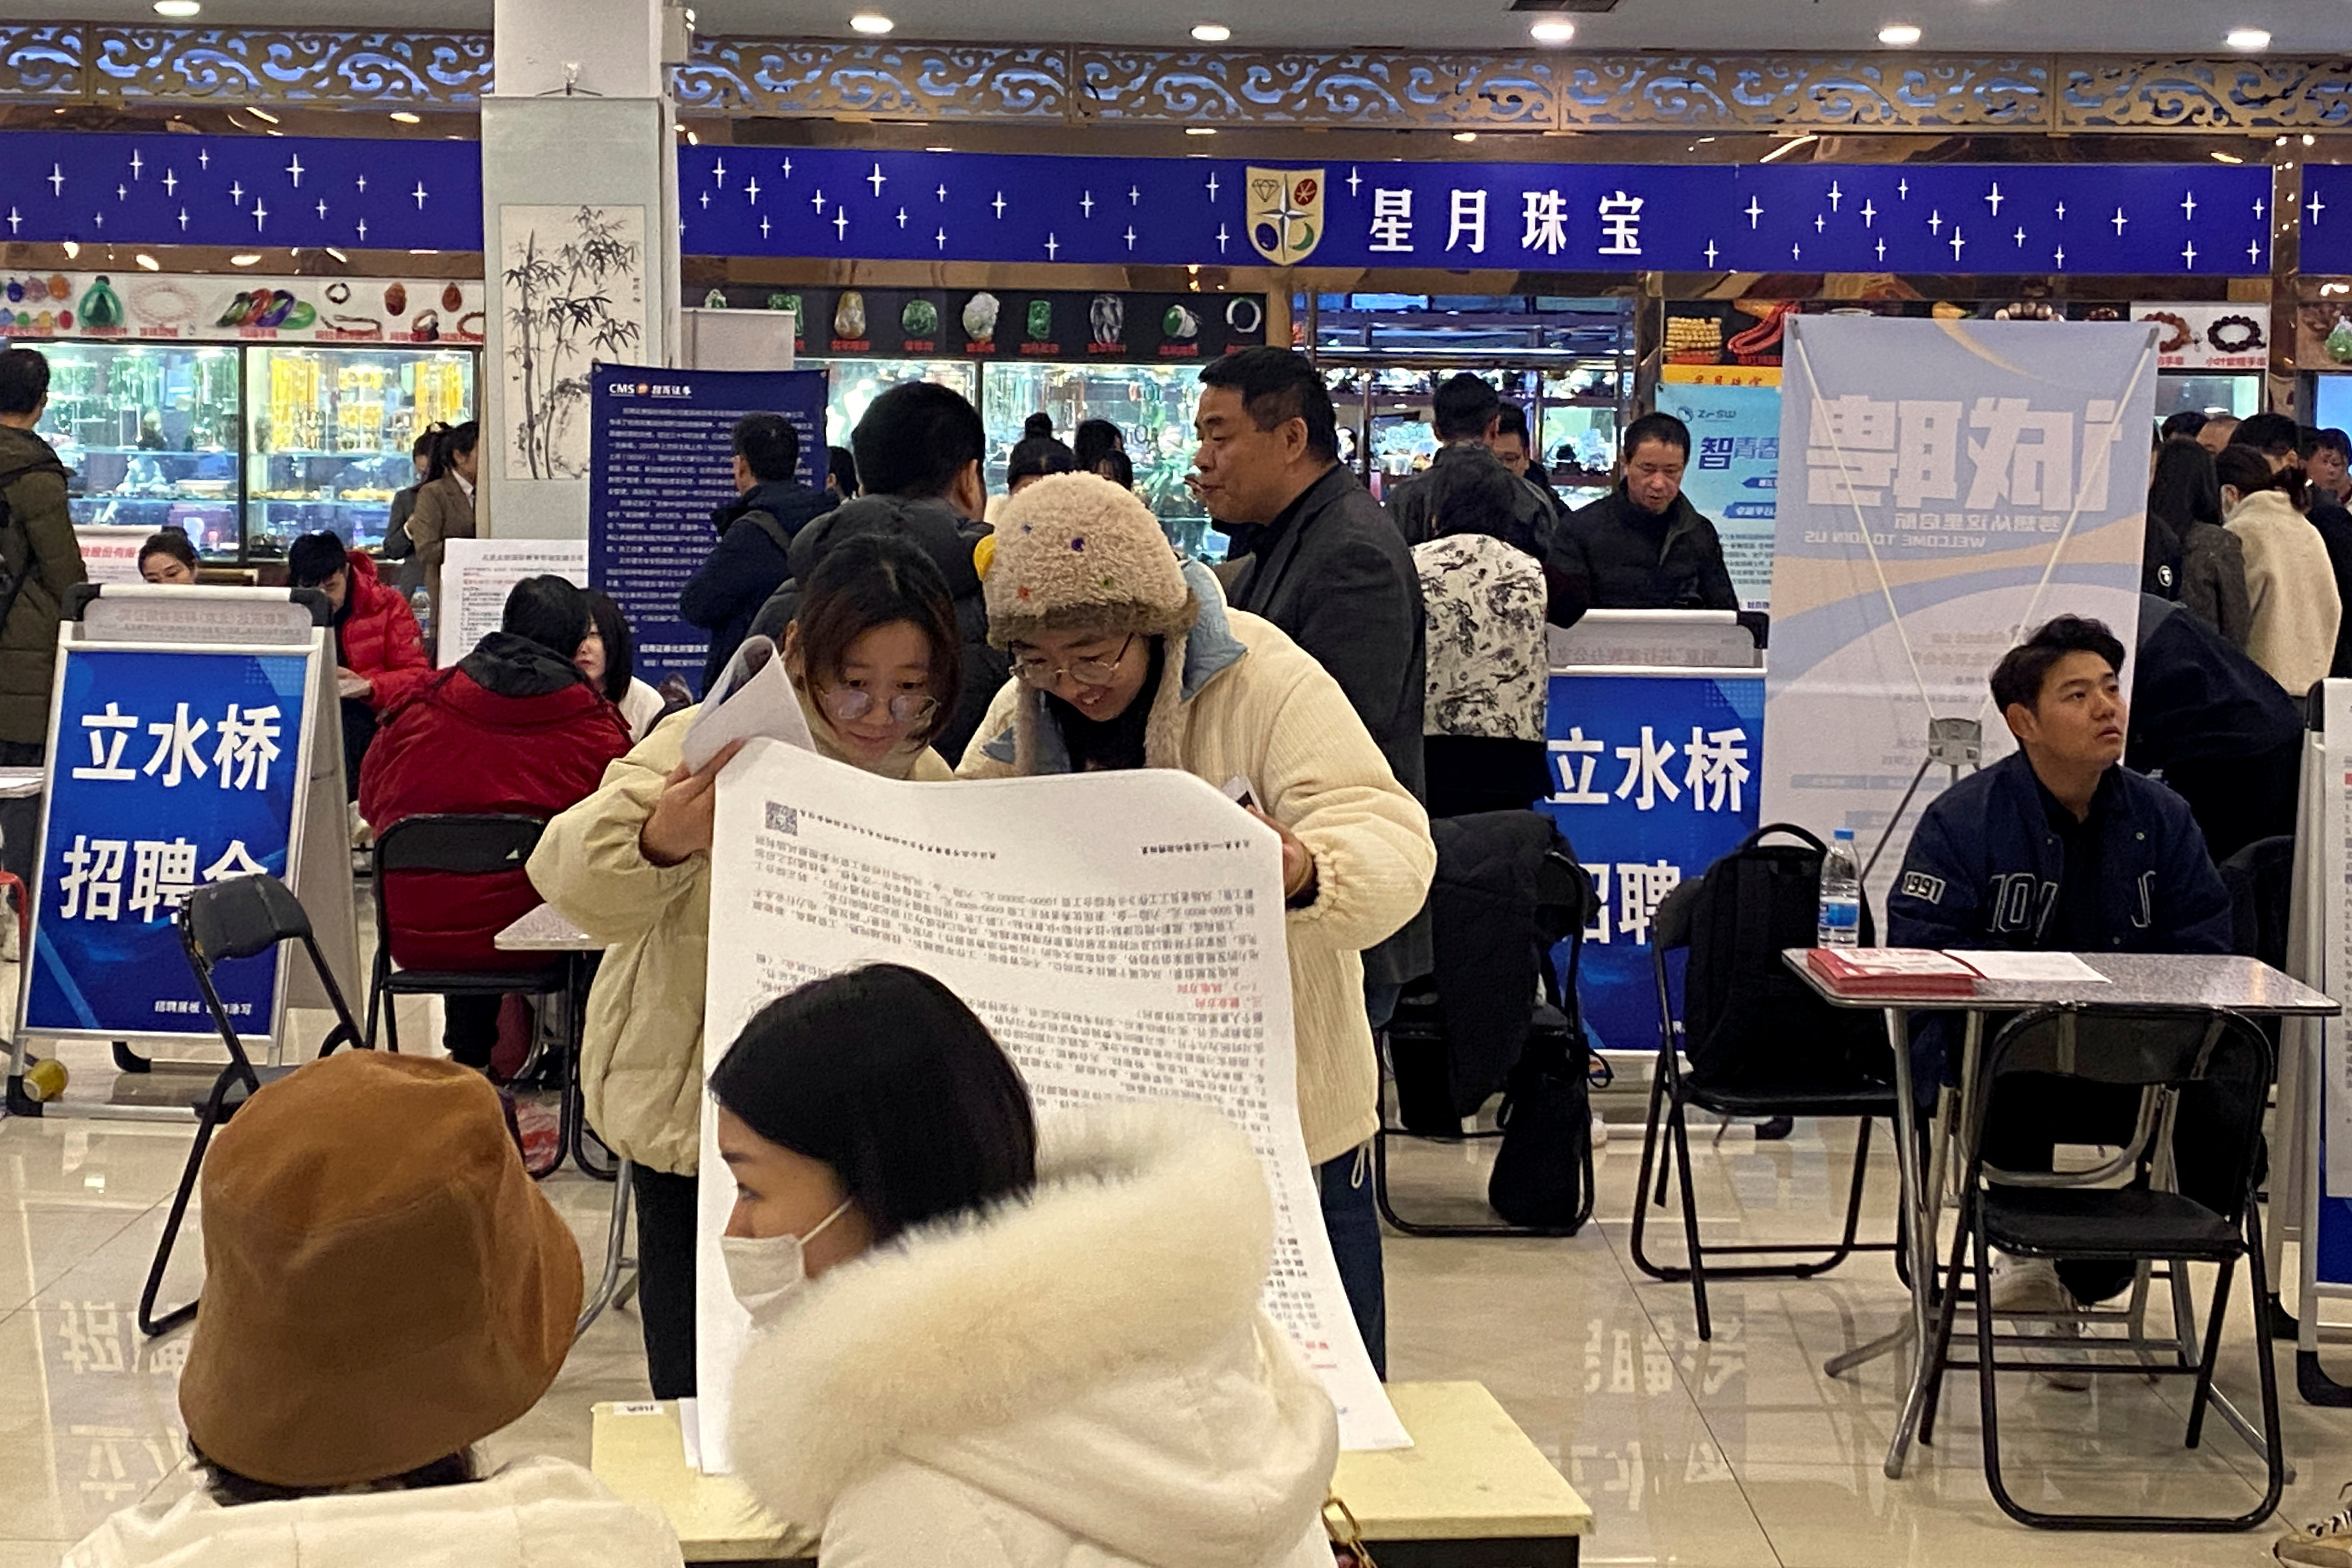 People attend a job fair in Beijing